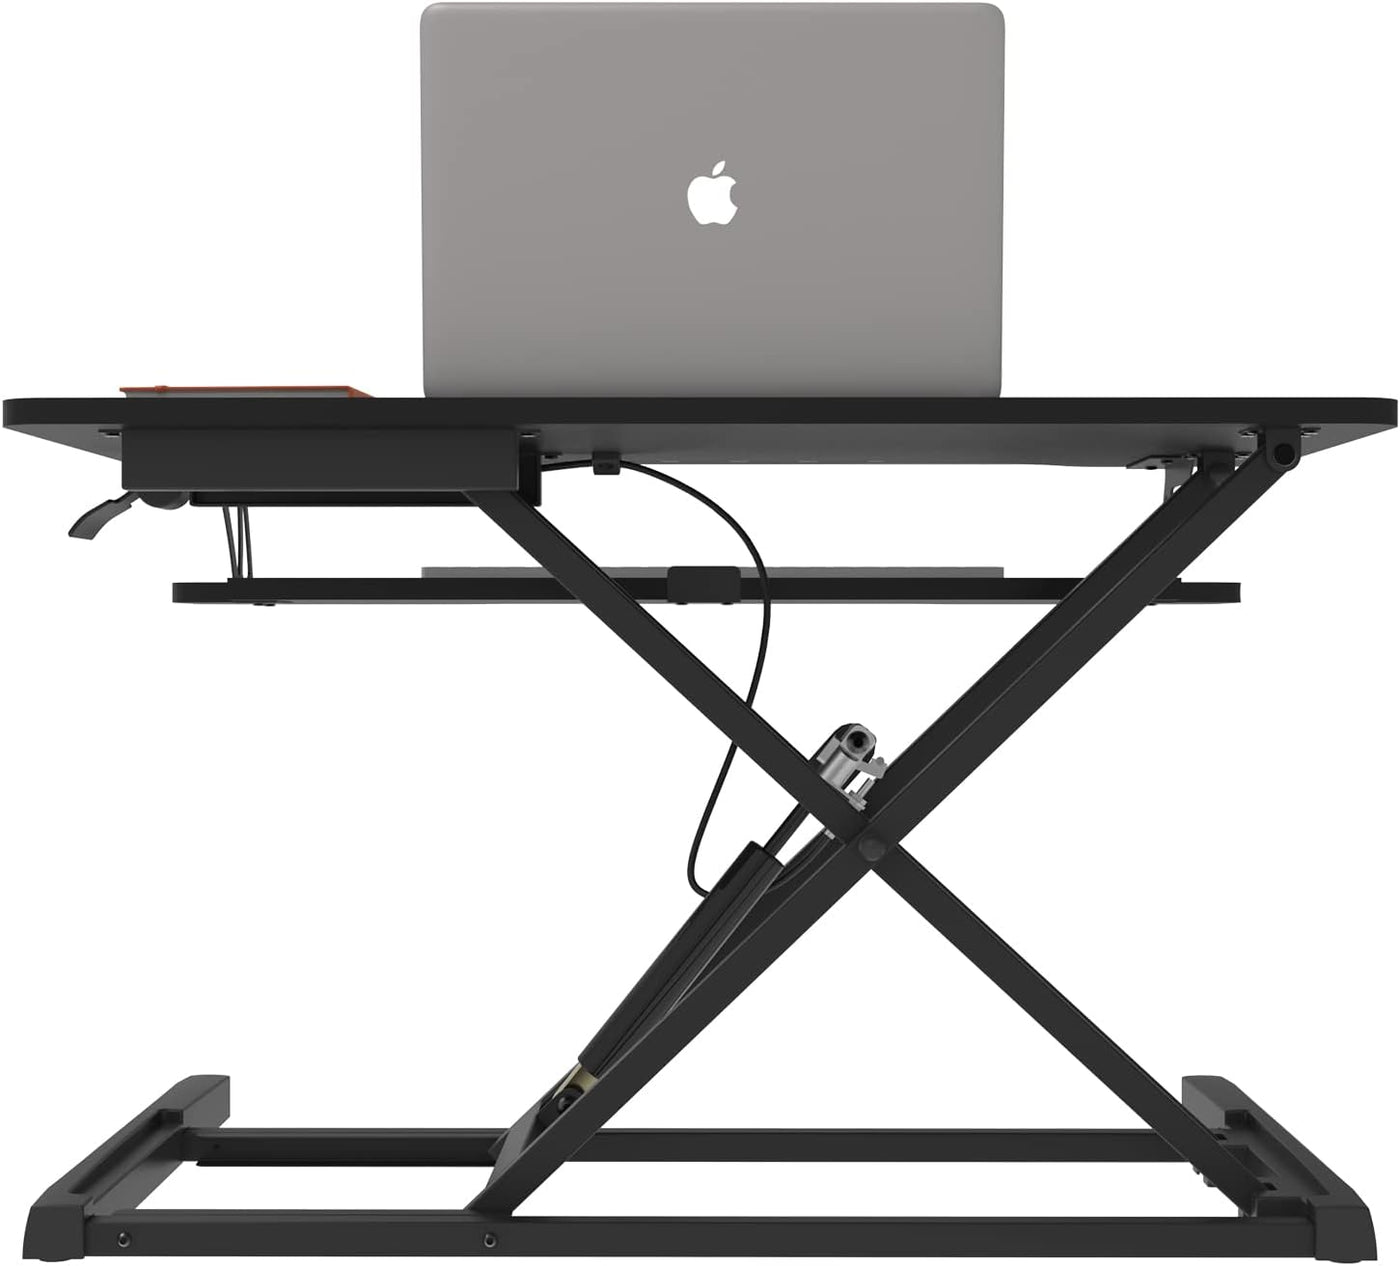 Stand Up Desk Converter, Elevating Desktop Standing Converter Desk Home Office Desk, Adjustable Height Stand Up Desk Riser with Keyboard Tray, Ergonomic Sit Stand Computer Desk Workstation